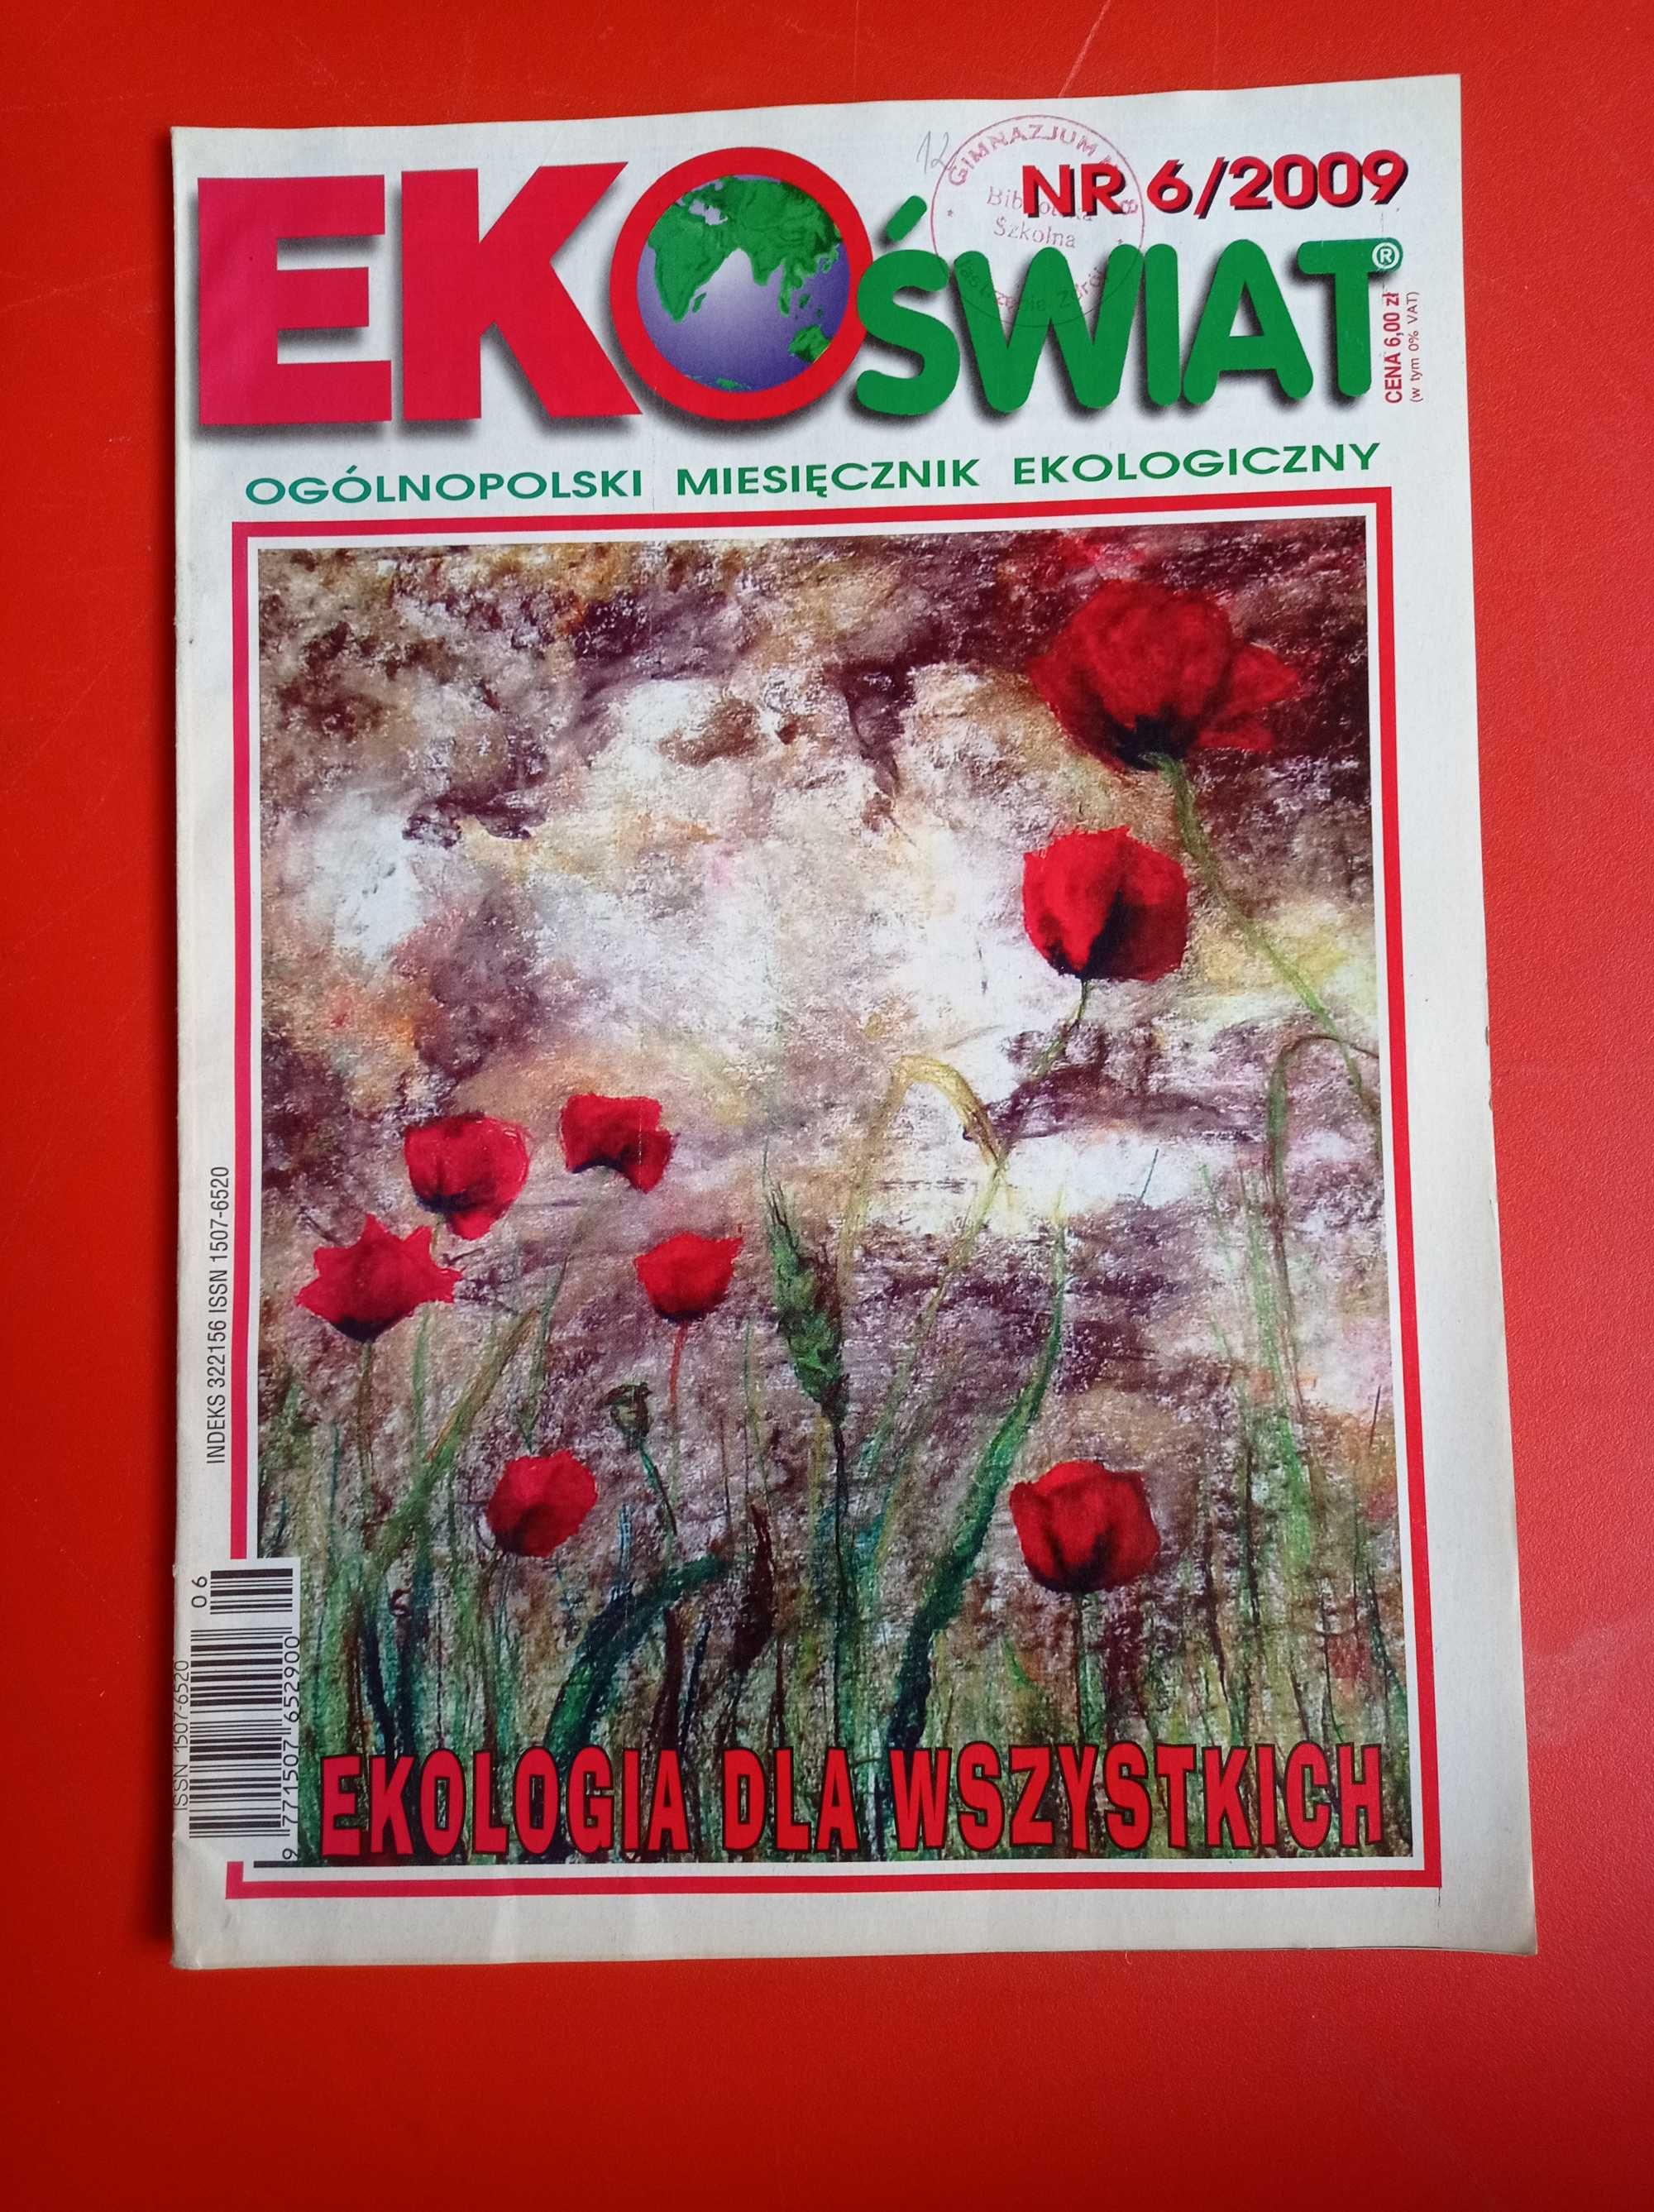 EkoŚwiat, miesięcznik ekologiczny, nr 6/2009, czerwiec 2009